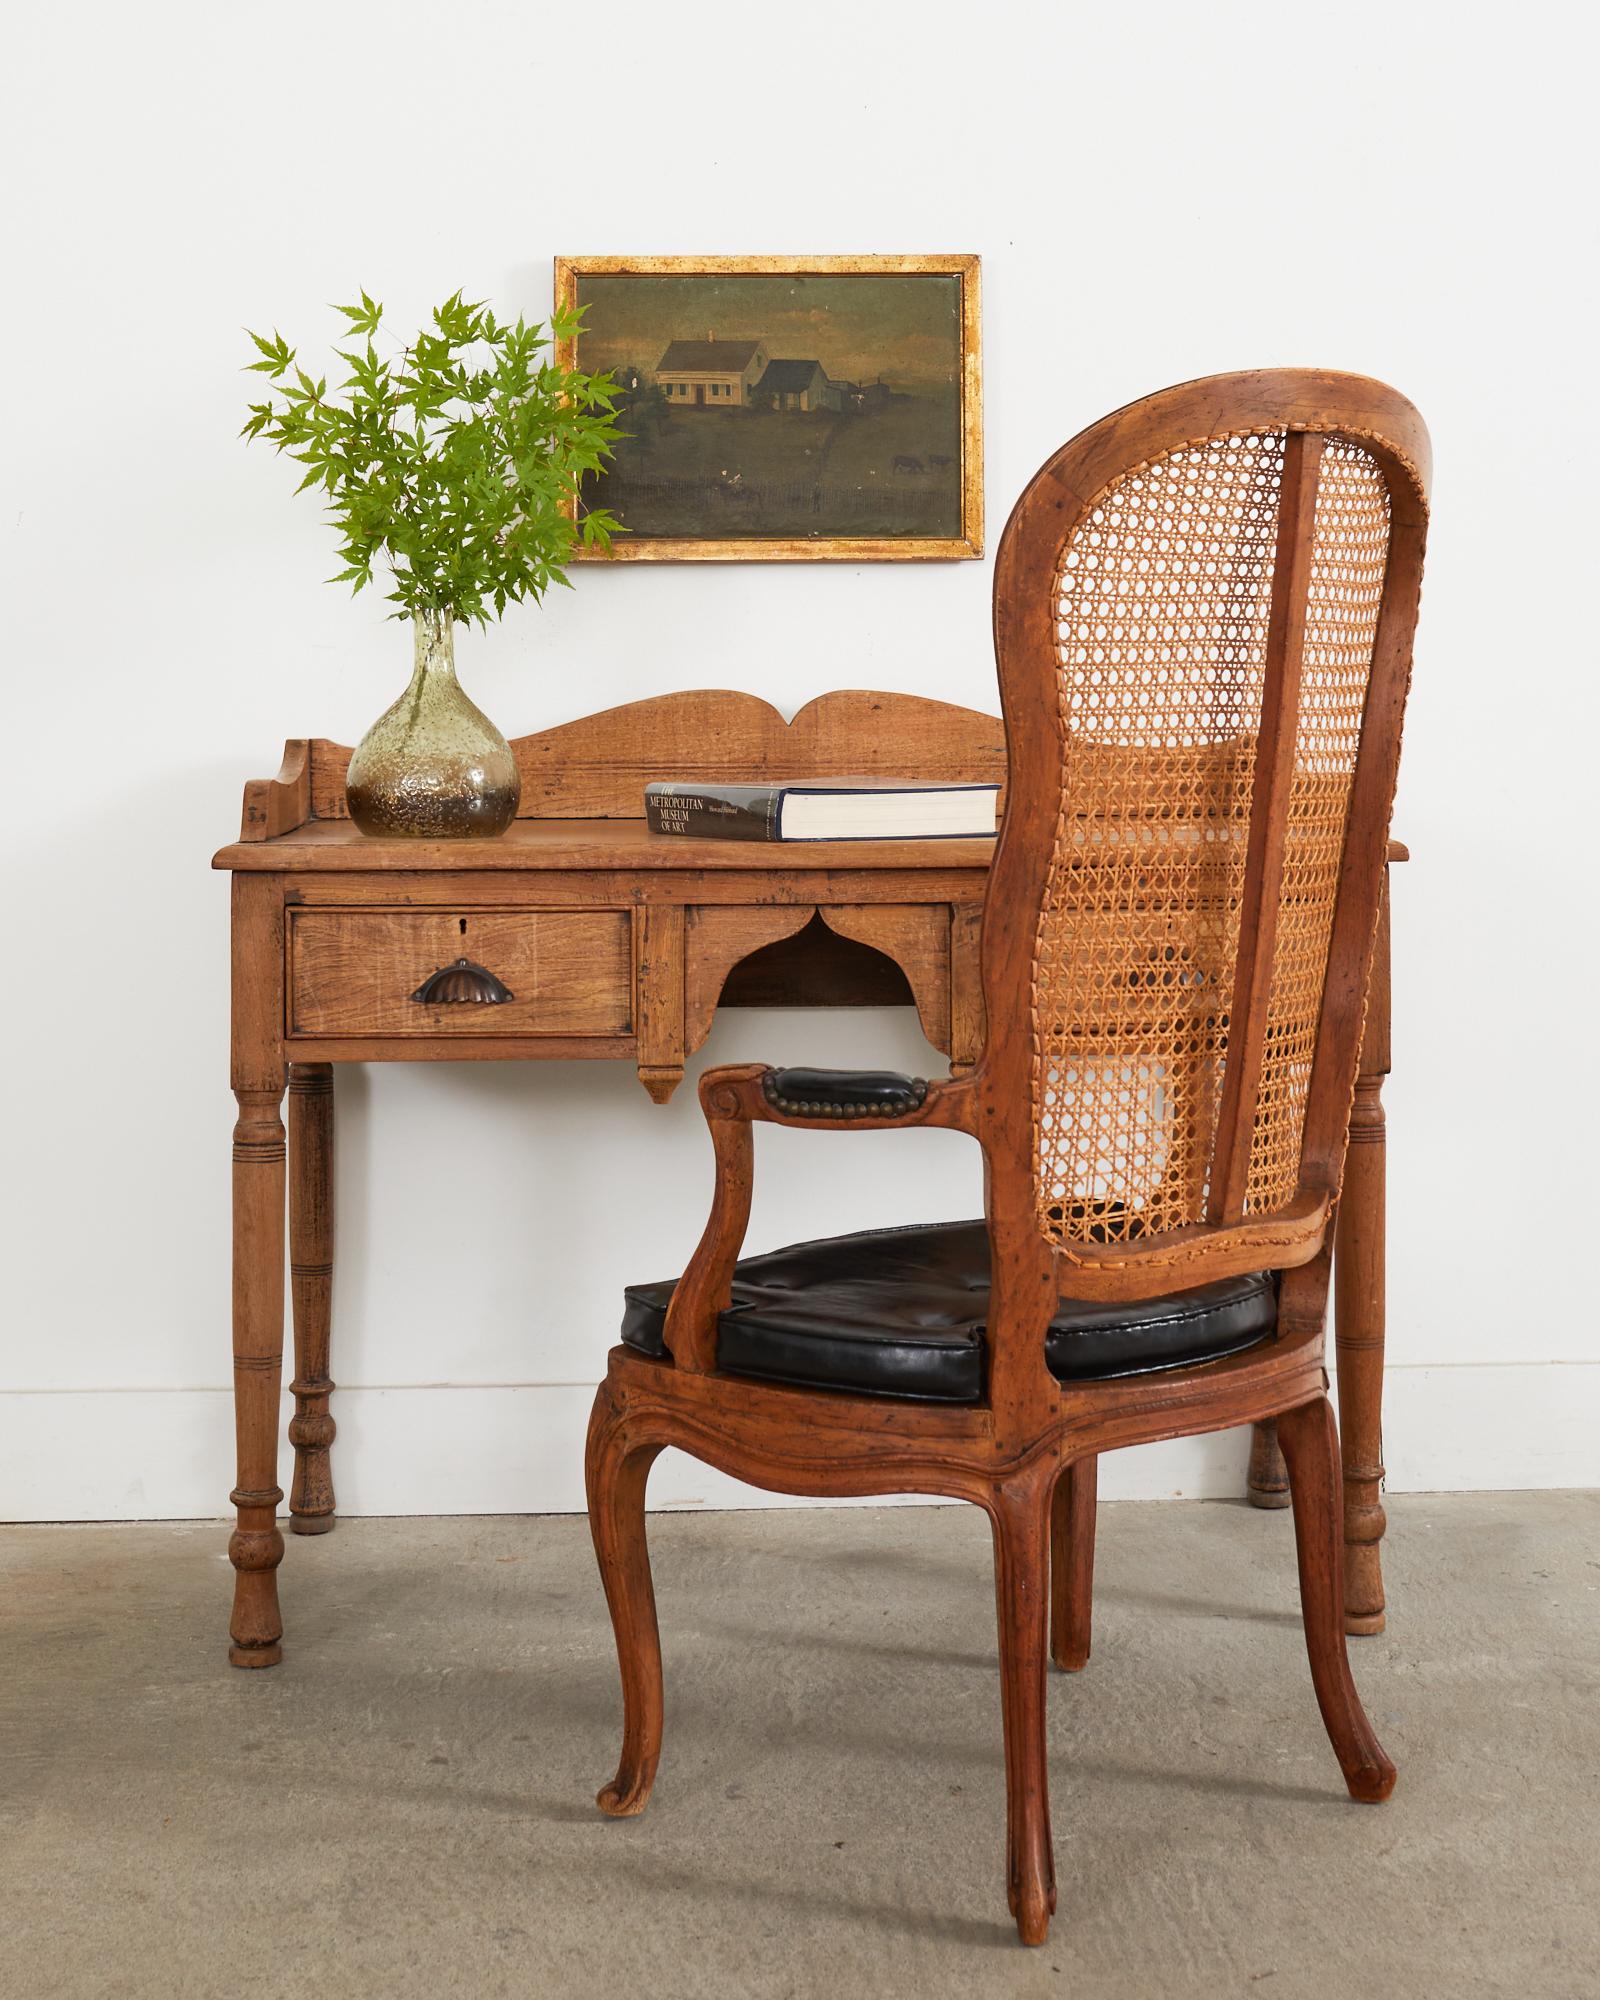 Unverwechselbarer französischer Fauteuil-Sessel aus dem 19. Jahrhundert mit einer seltenen hohen Rückenlehne. Wunderschön gefertigt aus Nussbaumholz mit einer reichen, gealterten Patina auf der Oberfläche. Der Sitz ist mit einem Sitzkissen aus